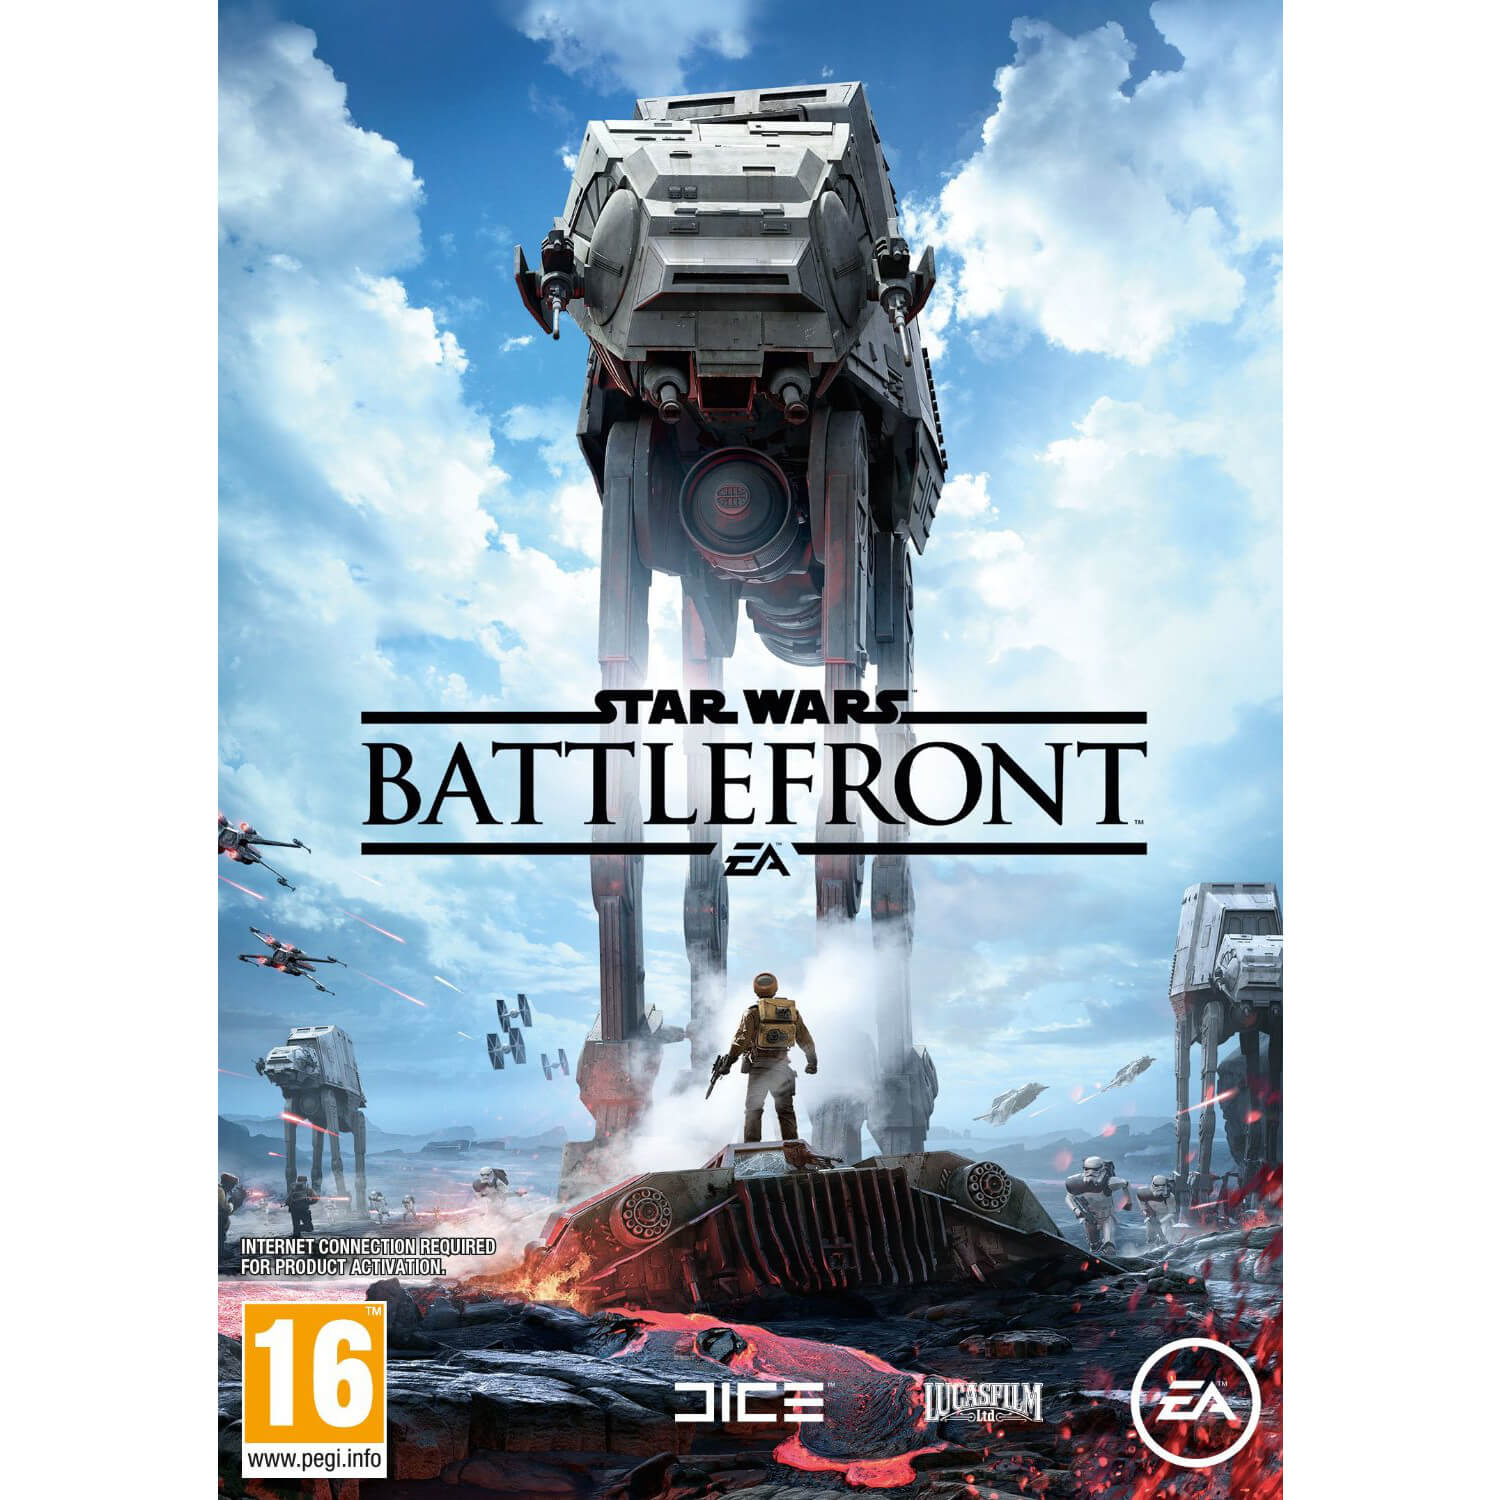  Joc PC Star Wars: Battlefront Editie Preorder 